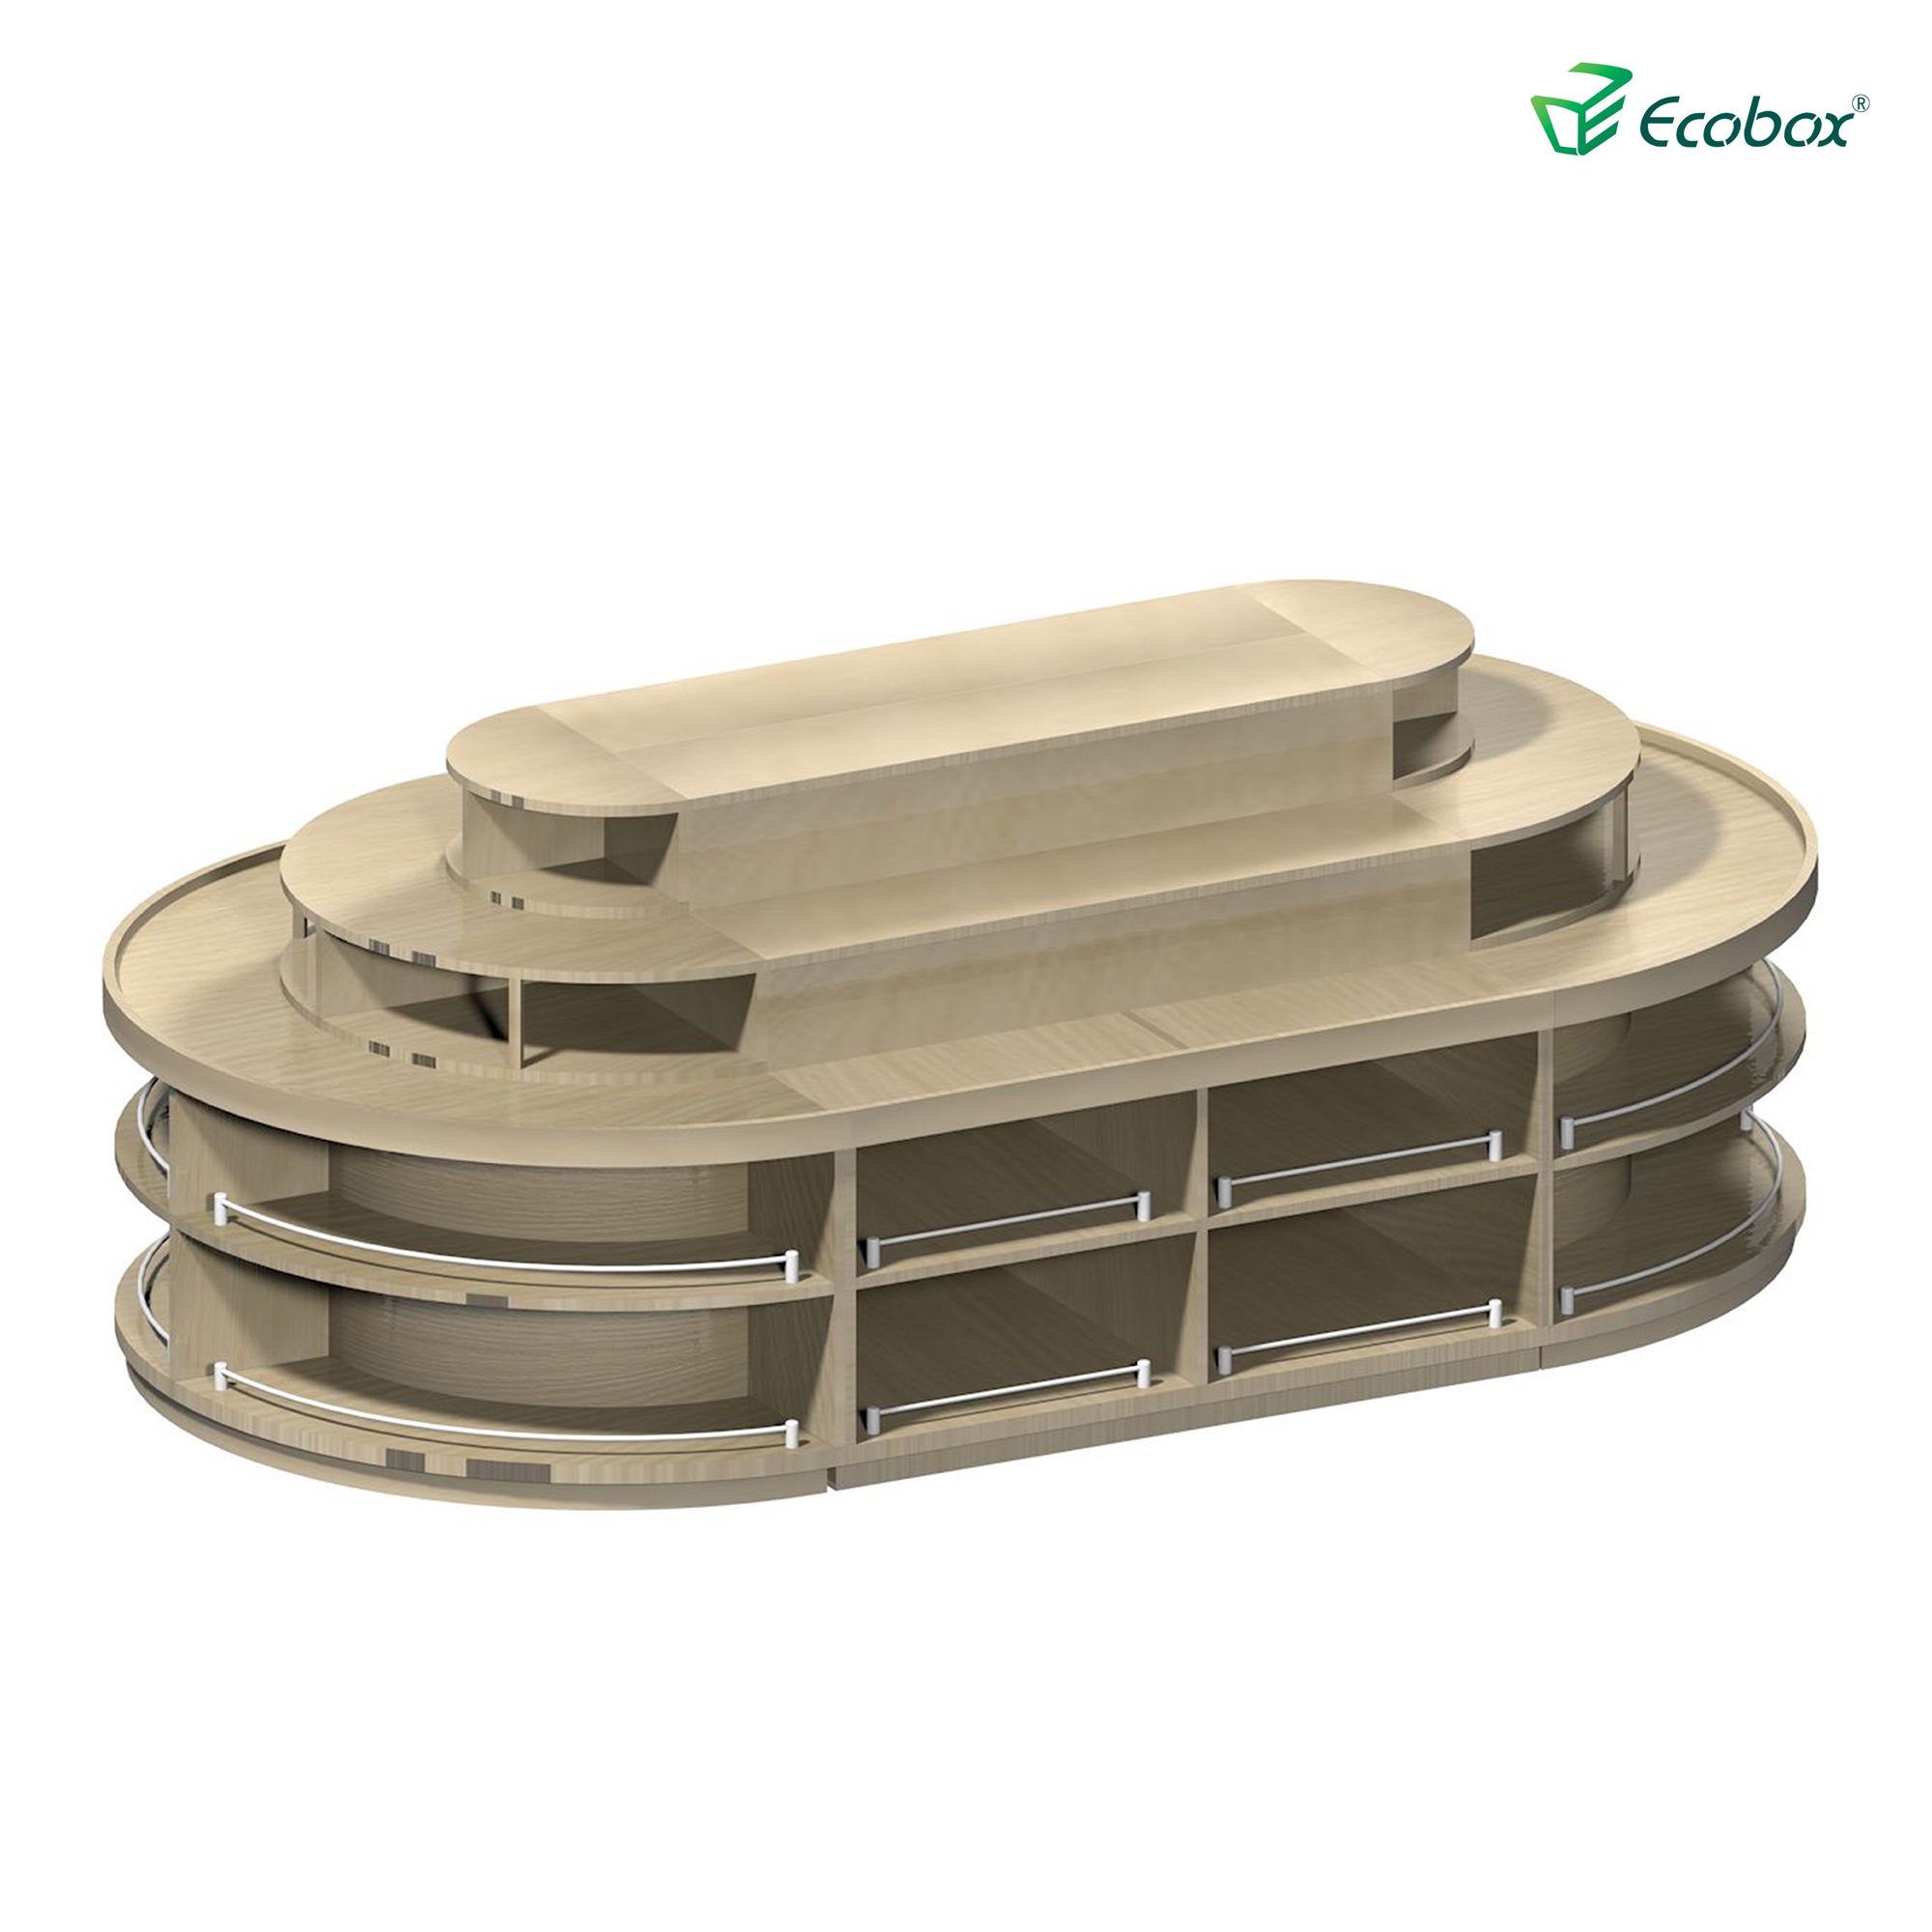 Prateleira redonda série ecobox g001 com caixas a granel ecobox displays de alimentos a granel de supermercado